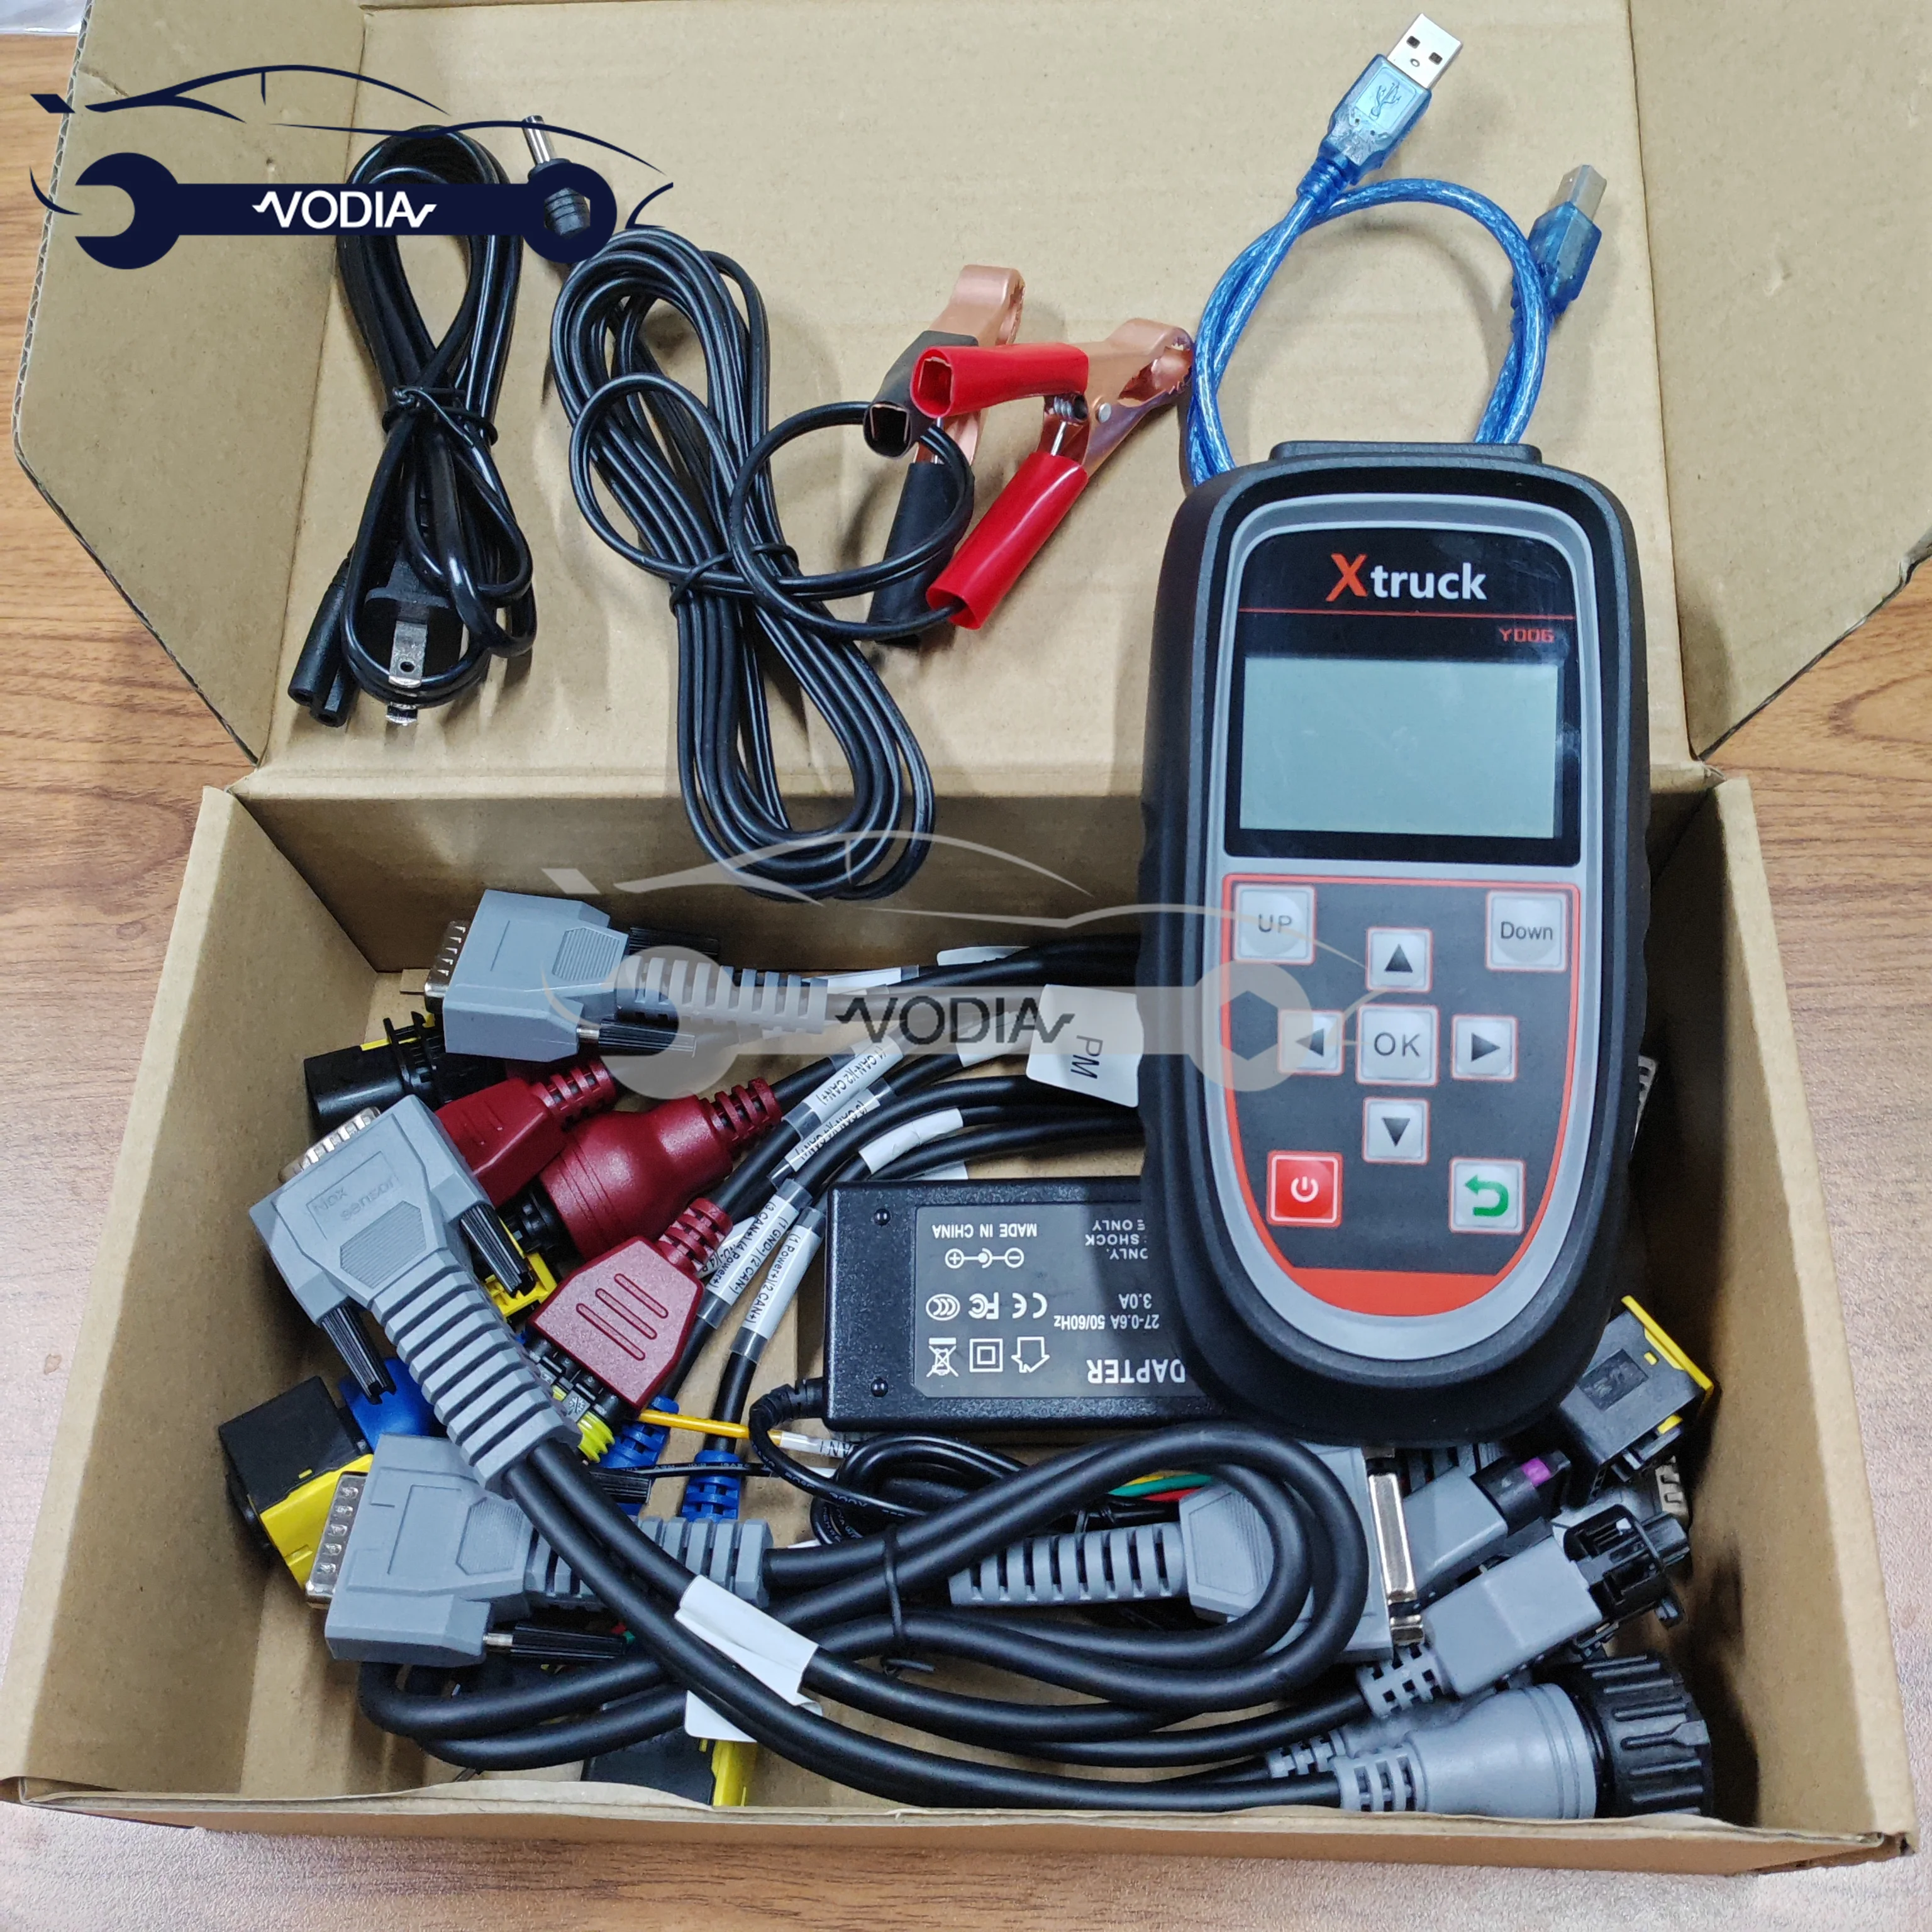 

Xtruck Y006 Automotive Nox Sensor Tester Urea Pump Tester Beacon Machine Nox Sensor Testing Equipment Diagnostic Tools